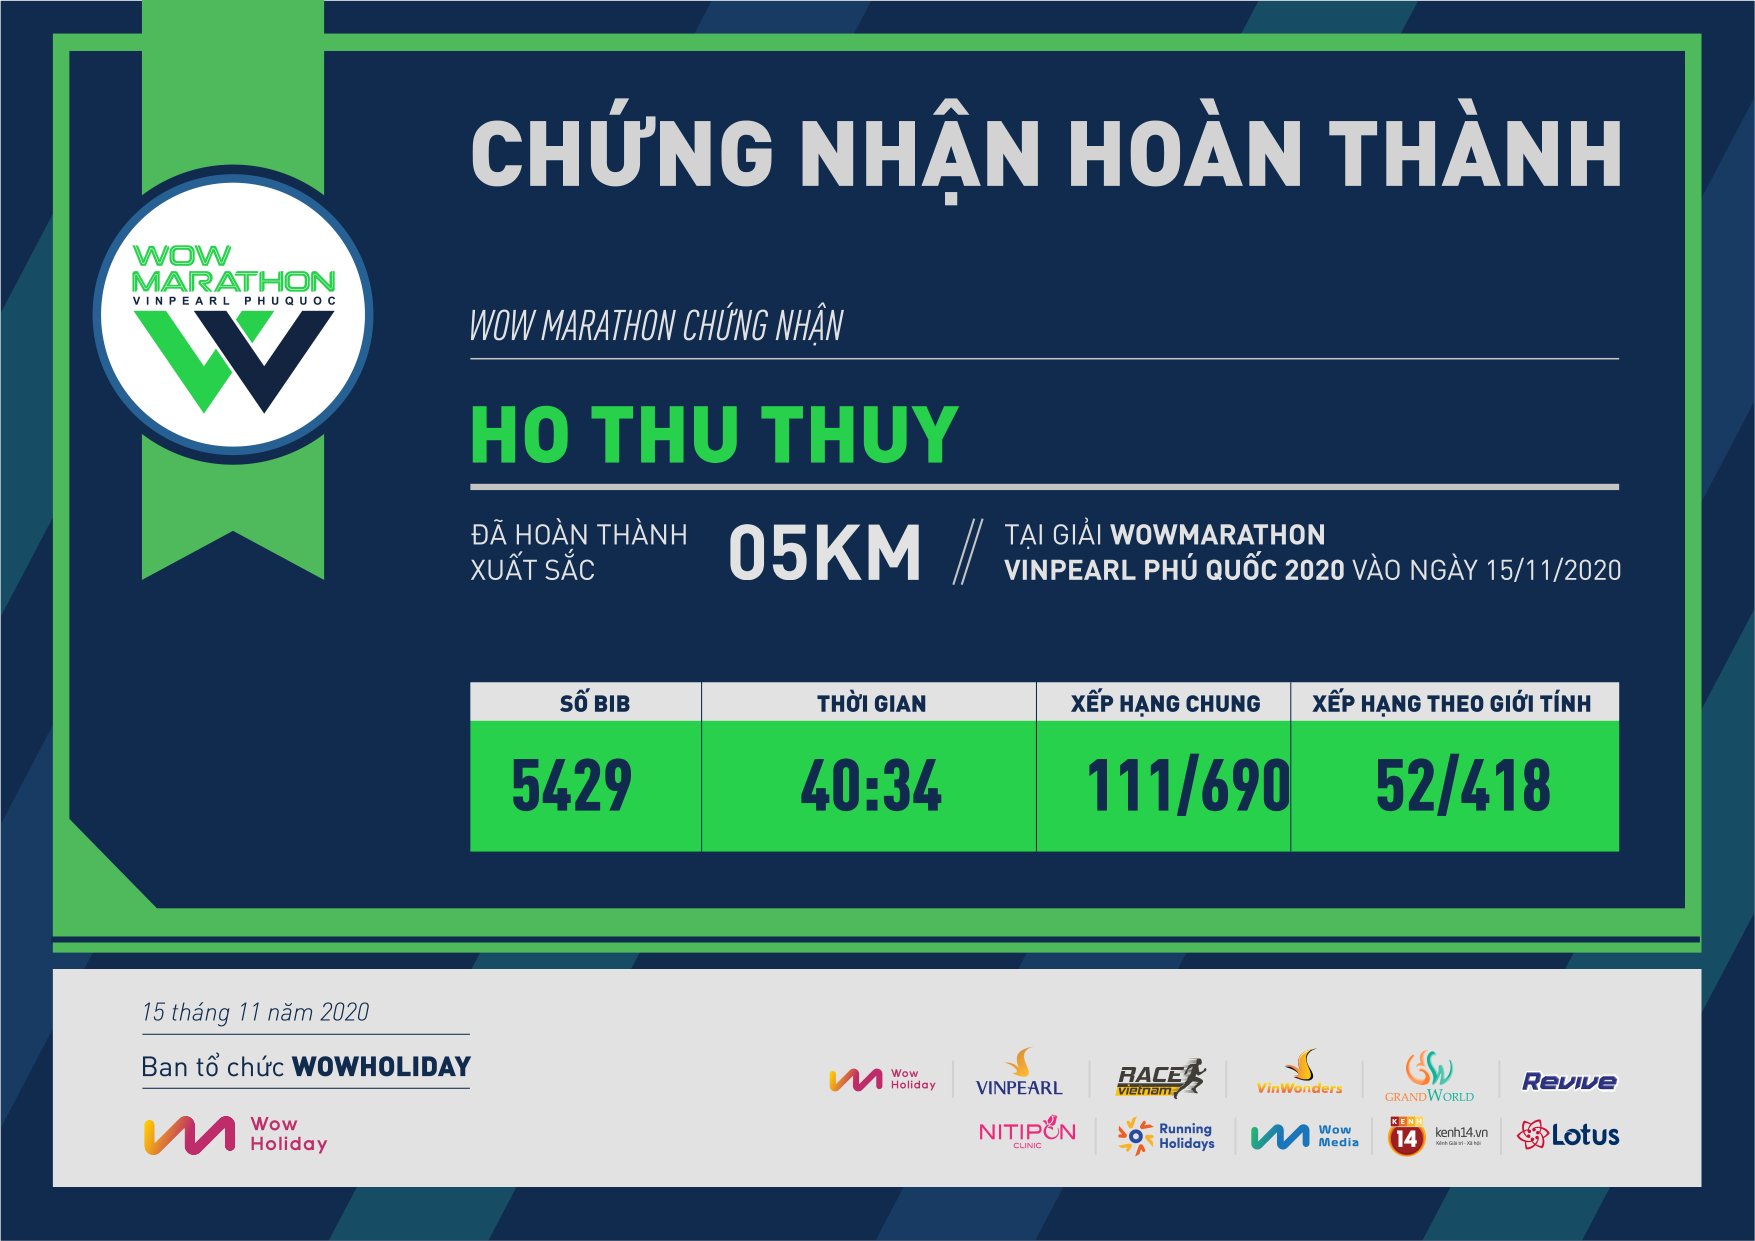 5429 - Ho Thu Thuy